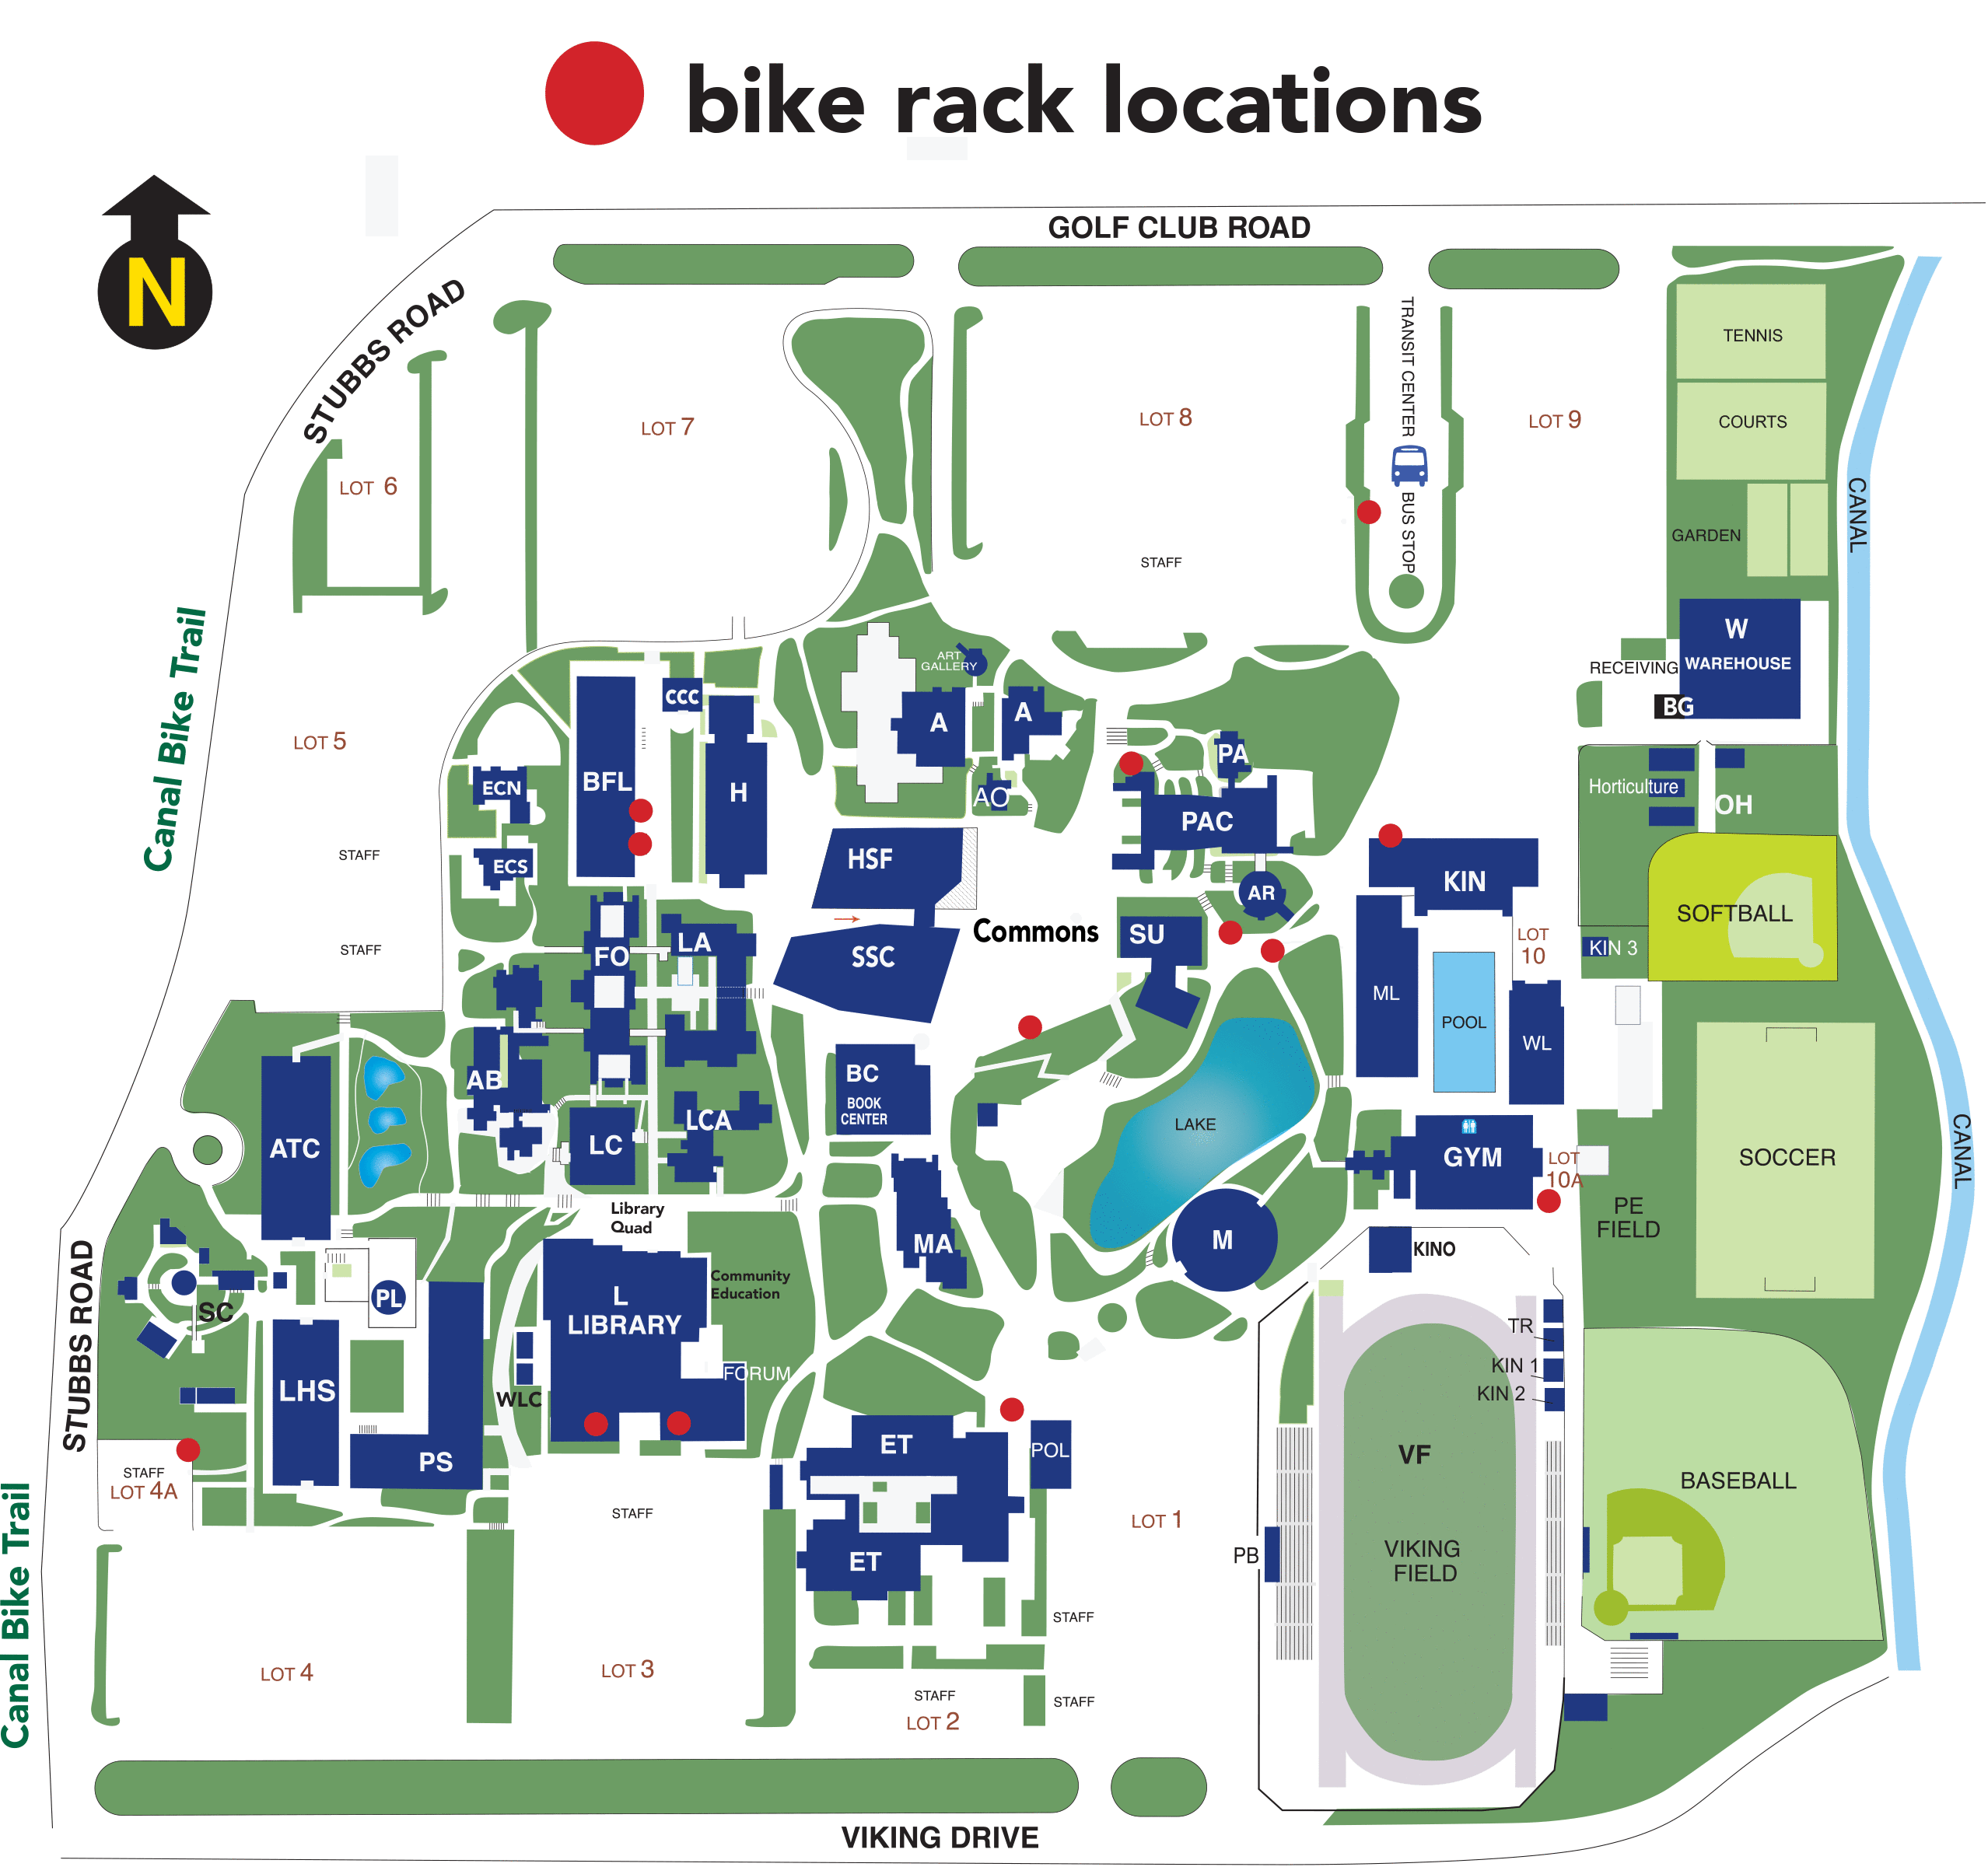 diablo valley college san ramon campus map